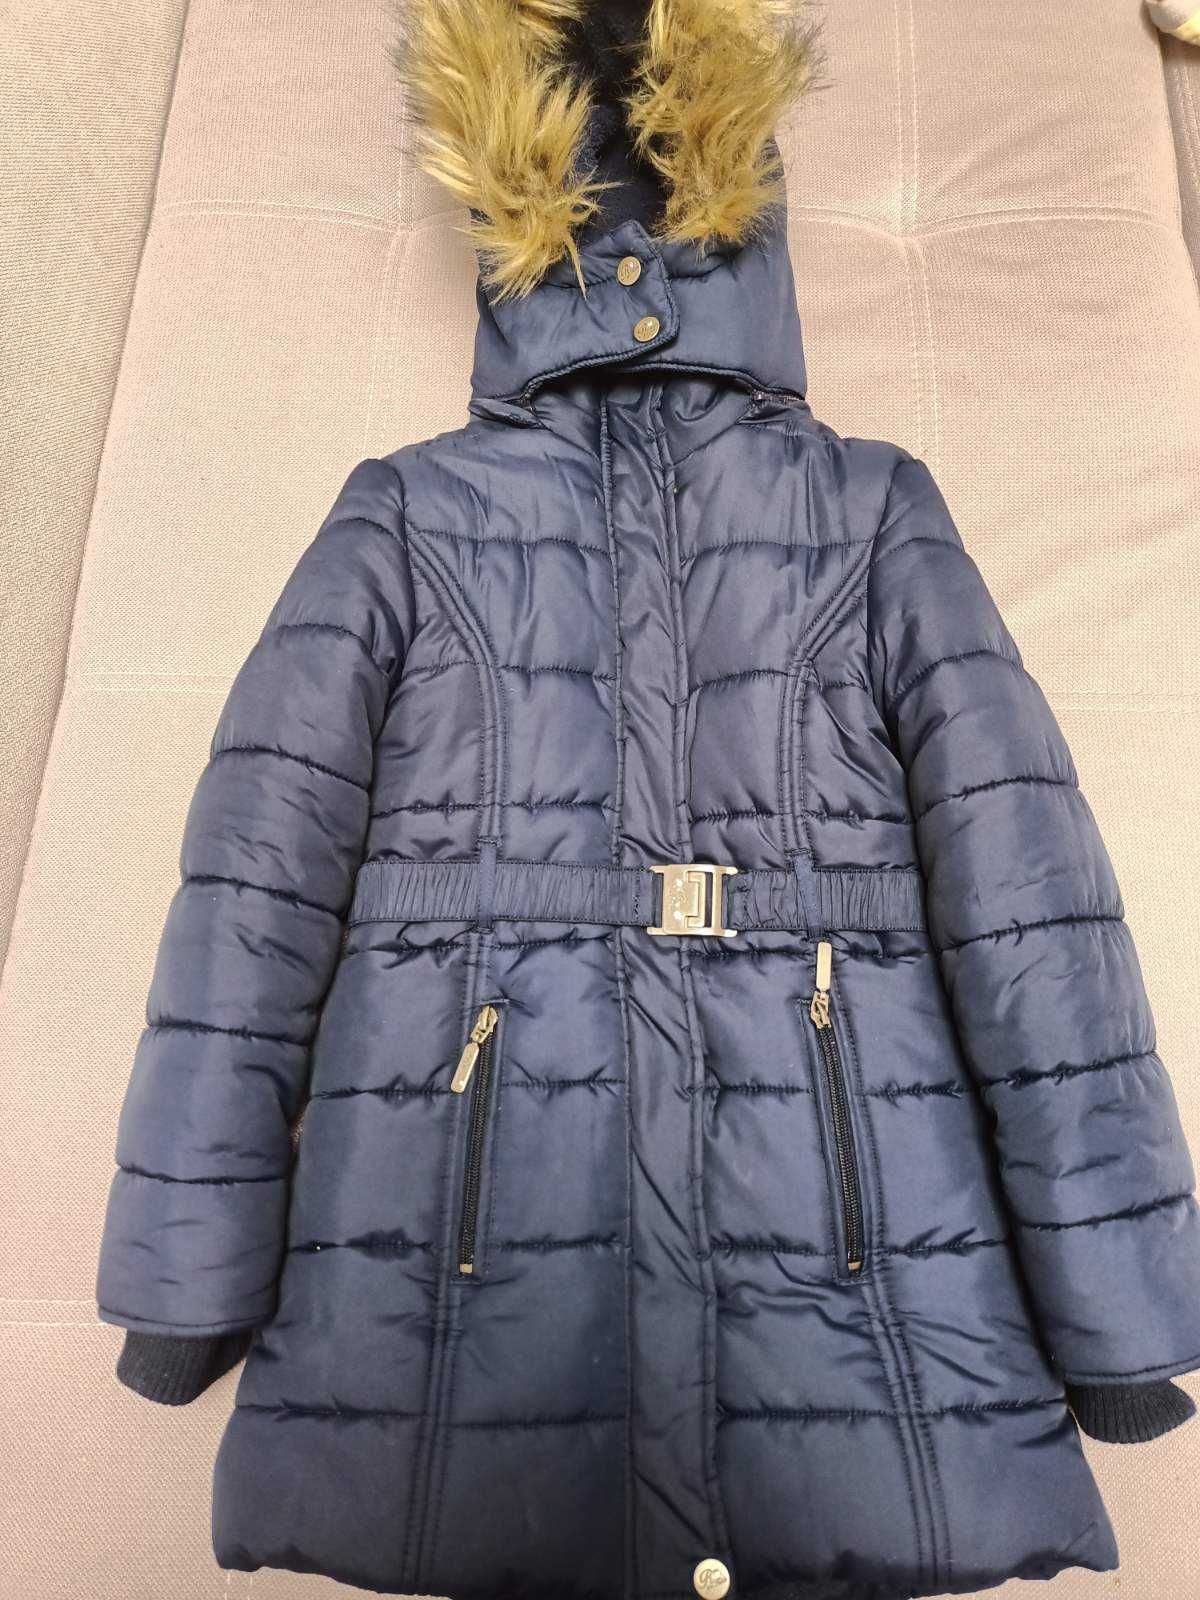 Якісне, тепле зимове пальто для дівчинки 128-134 р., Німеччина